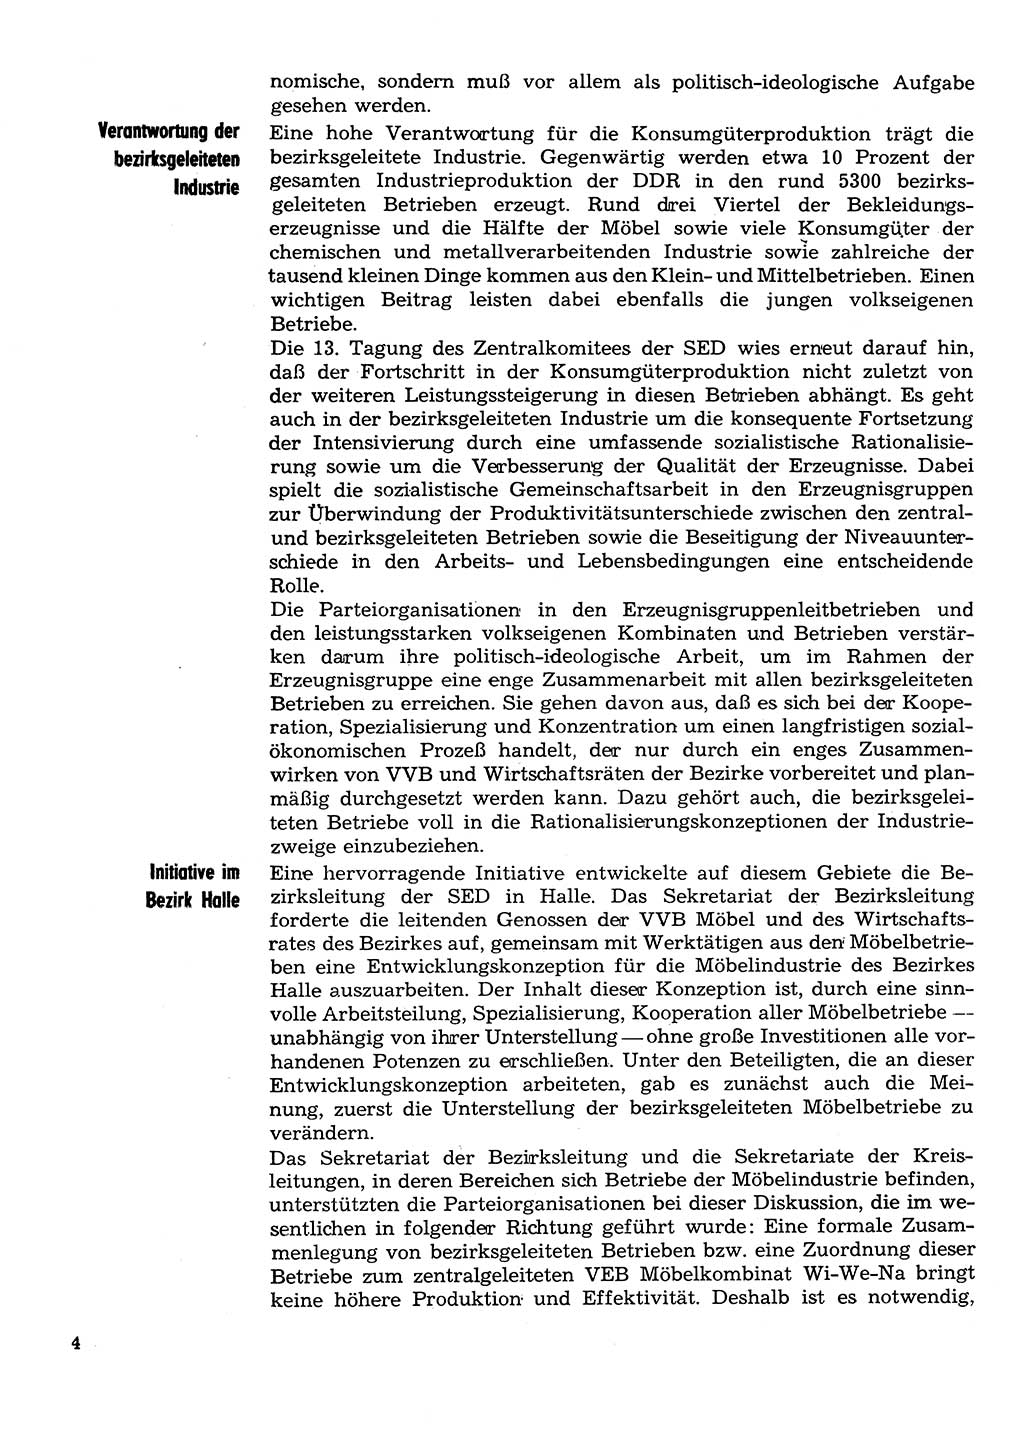 Neuer Weg (NW), Organ des Zentralkomitees (ZK) der SED (Sozialistische Einheitspartei Deutschlands) für Fragen des Parteilebens, 30. Jahrgang [Deutsche Demokratische Republik (DDR)] 1975, Seite 4 (NW ZK SED DDR 1975, S. 4)